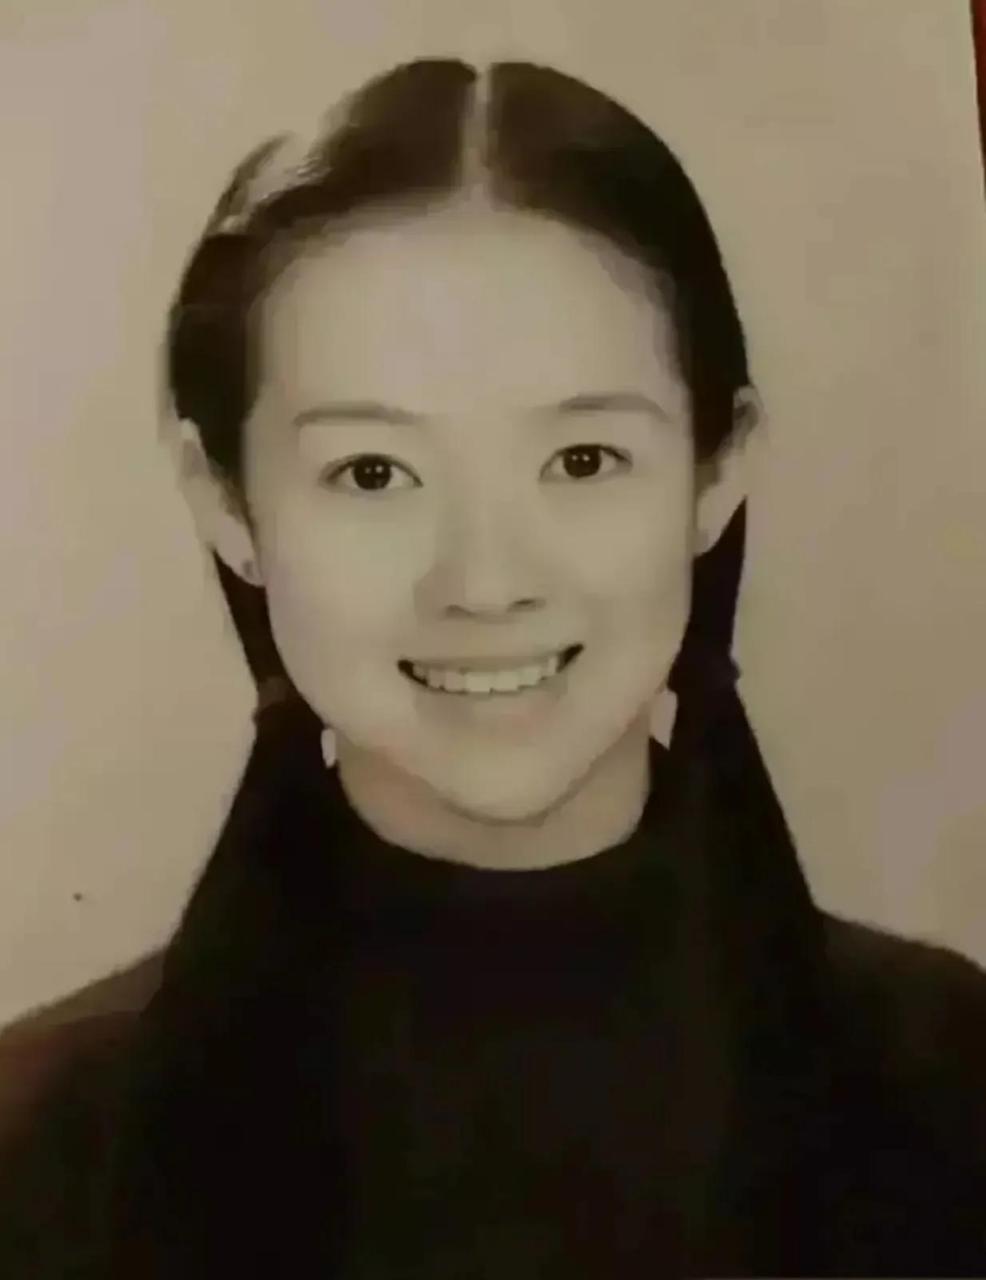 1996年,时年19岁的章子怡参加高考,准考证上的照片展现了她清纯的美貌